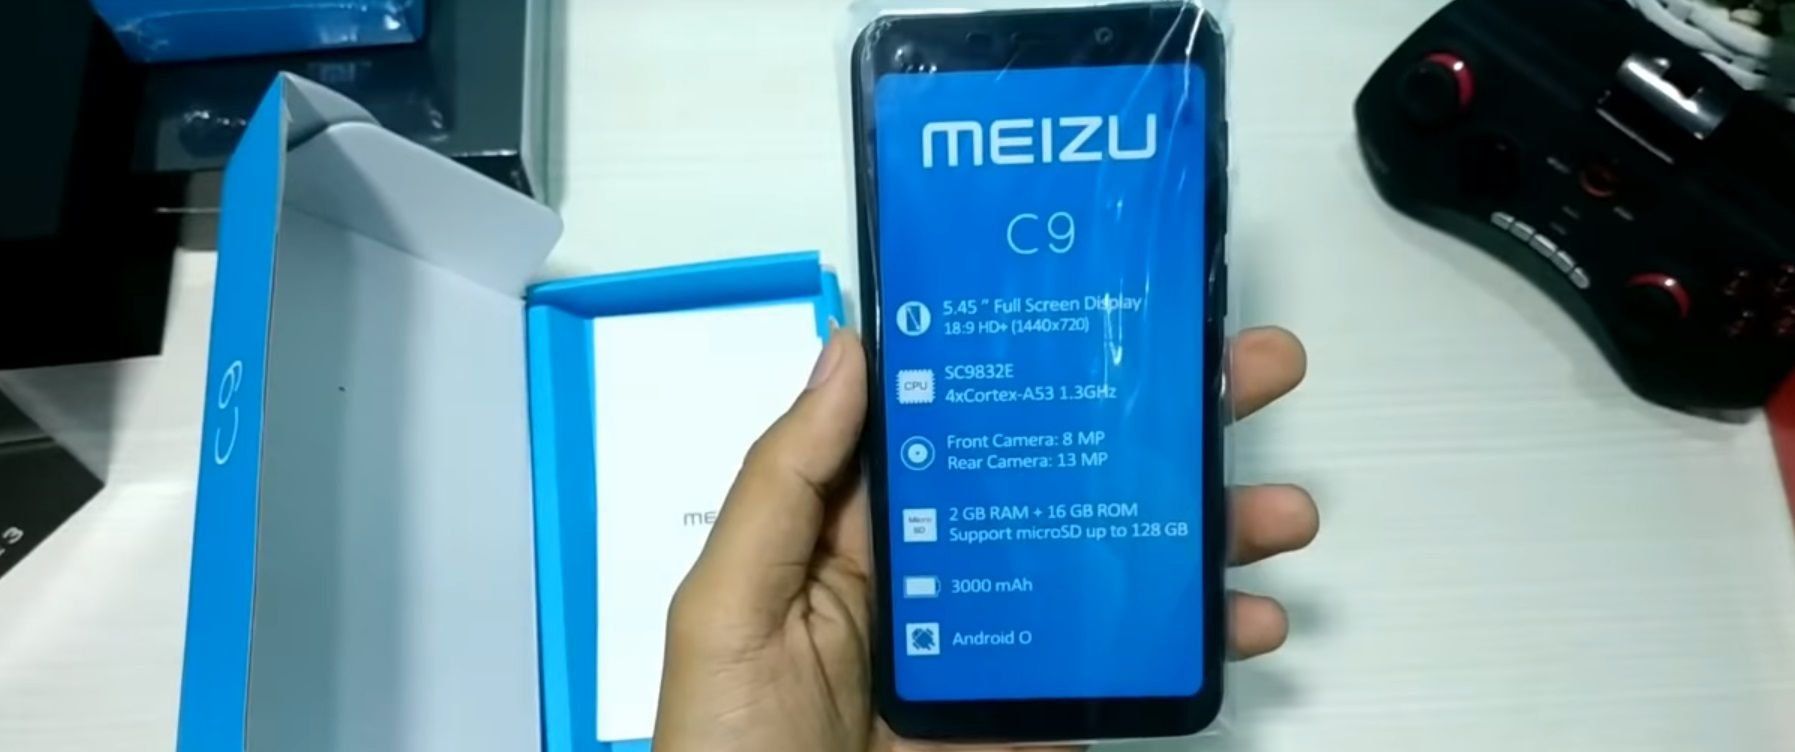 Smartfóny Meizu C9 a C9 Pro - výhody a nevýhody